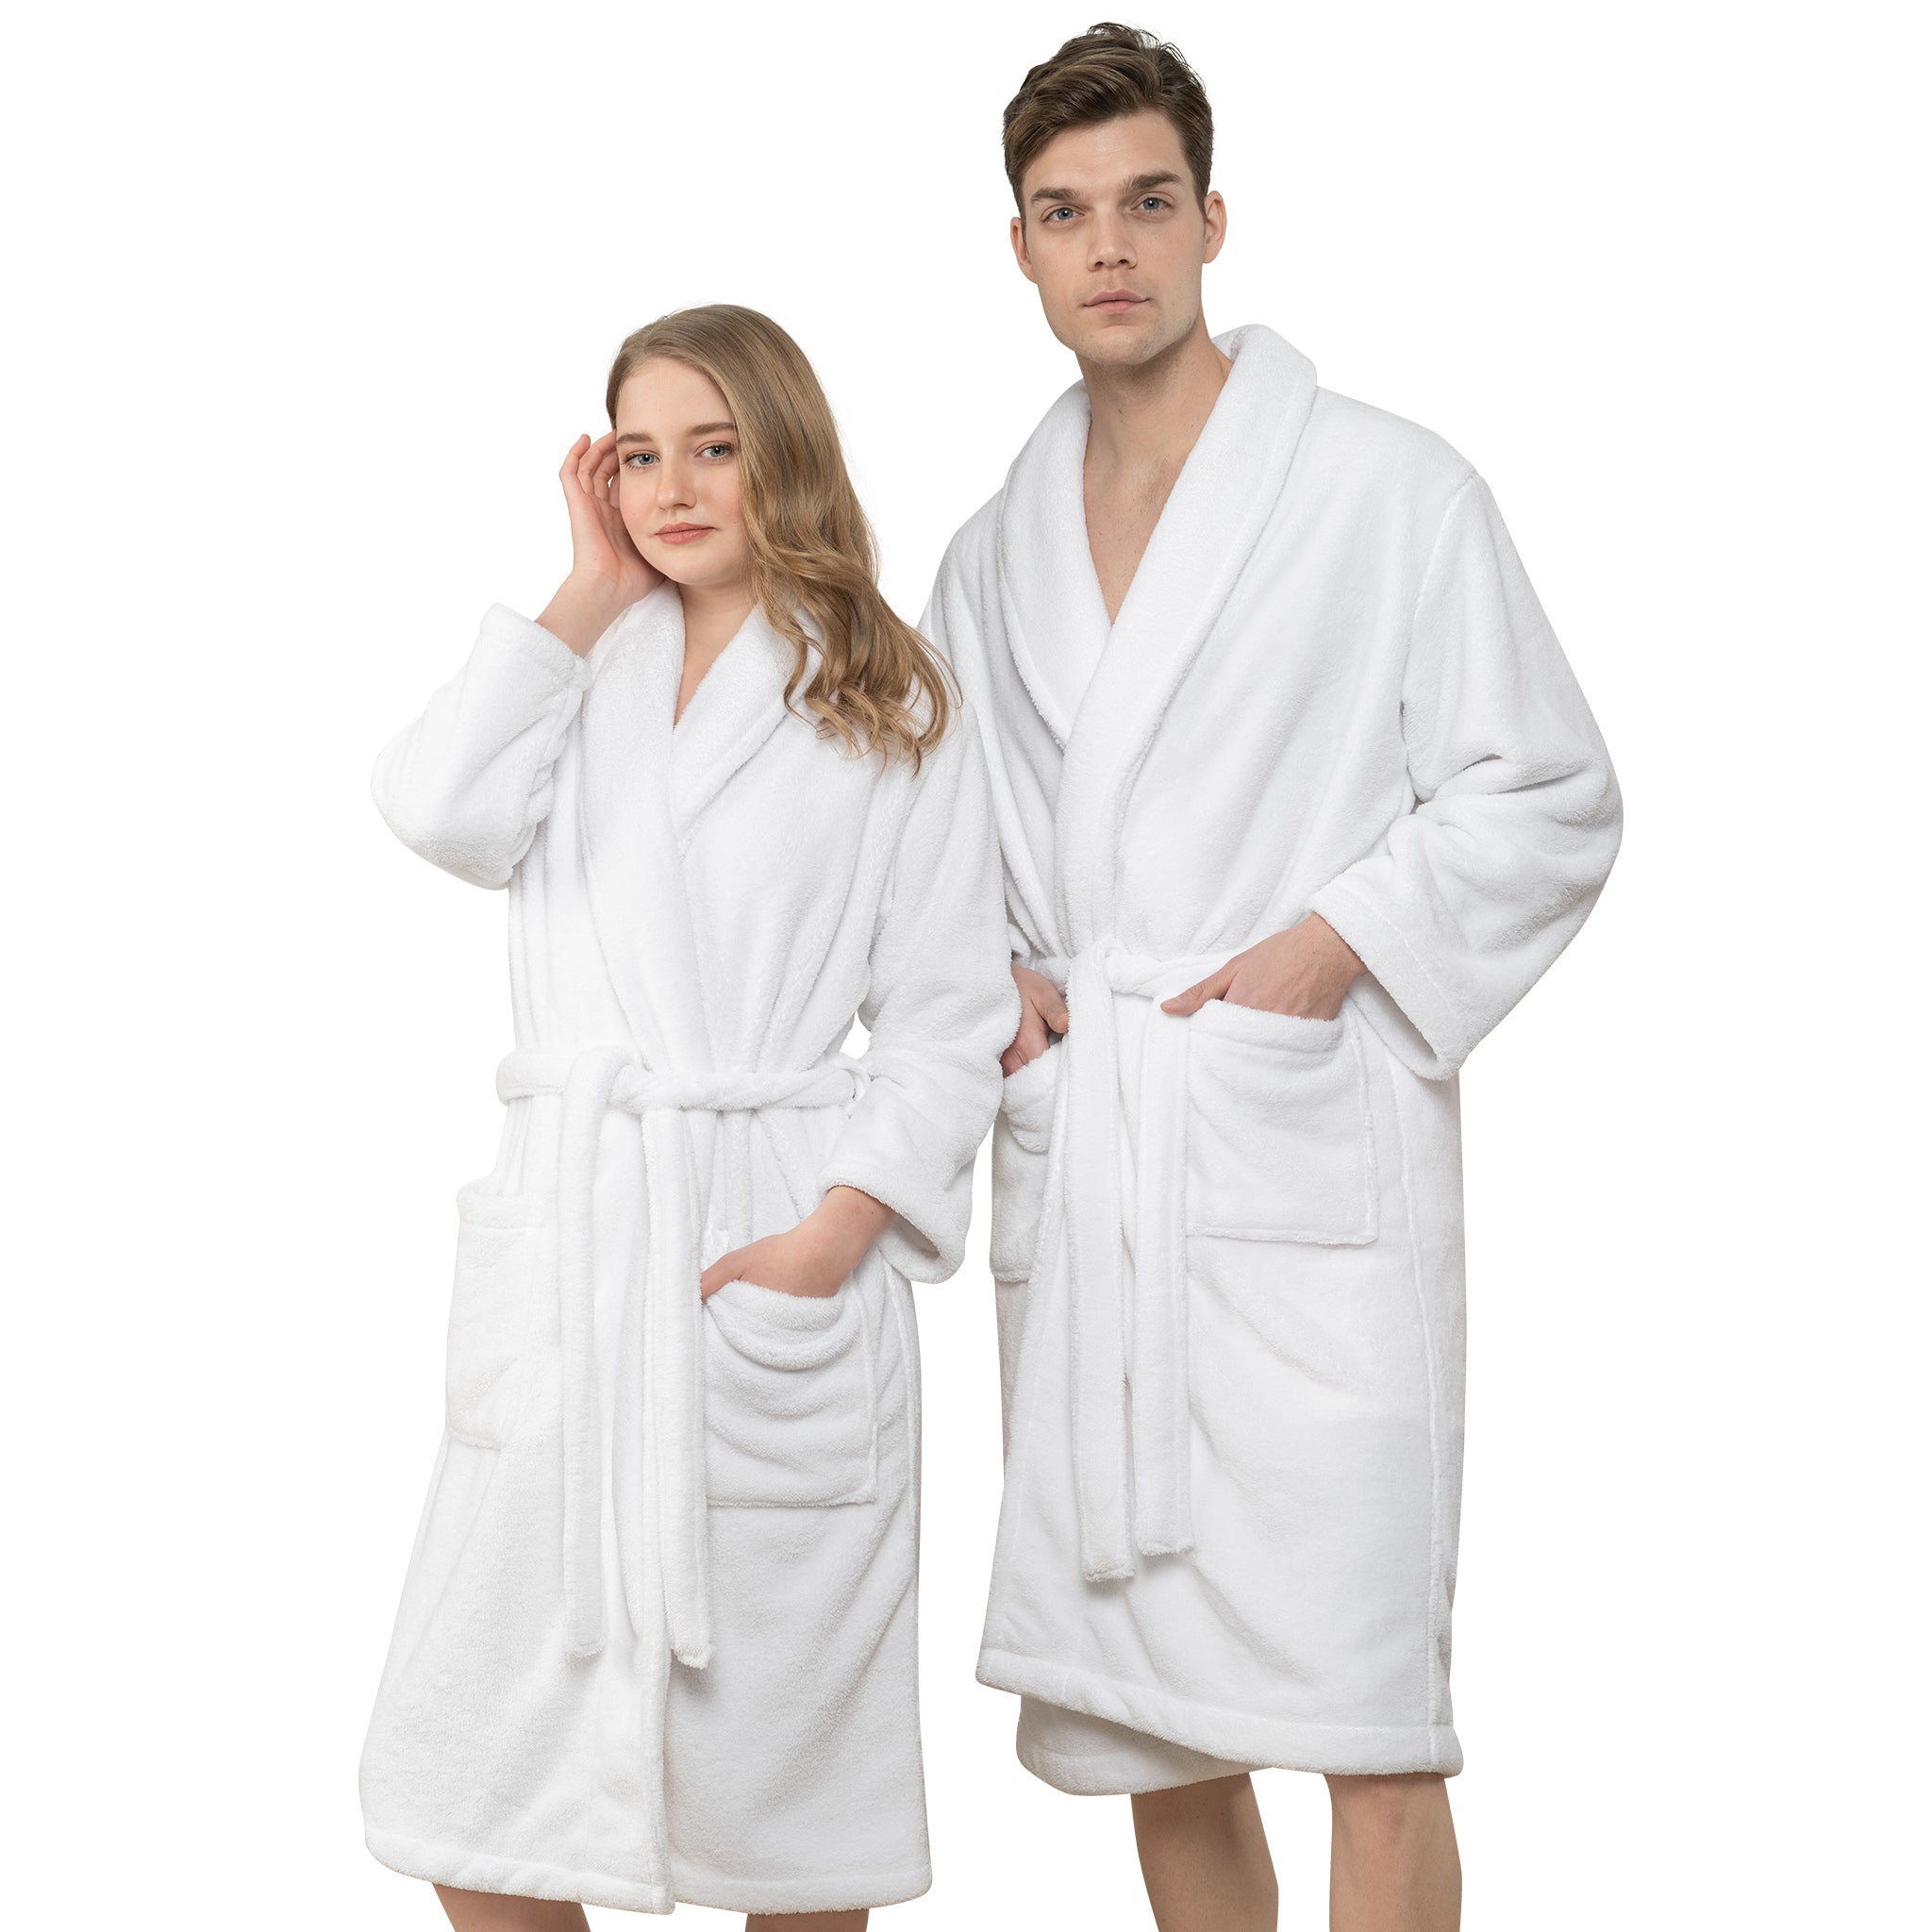 http://americansoftlinen.com/cdn/shop/files/american-soft-linen-luxury-bathrobes-S-M-white-1.jpg?v=1702903883&width=2048